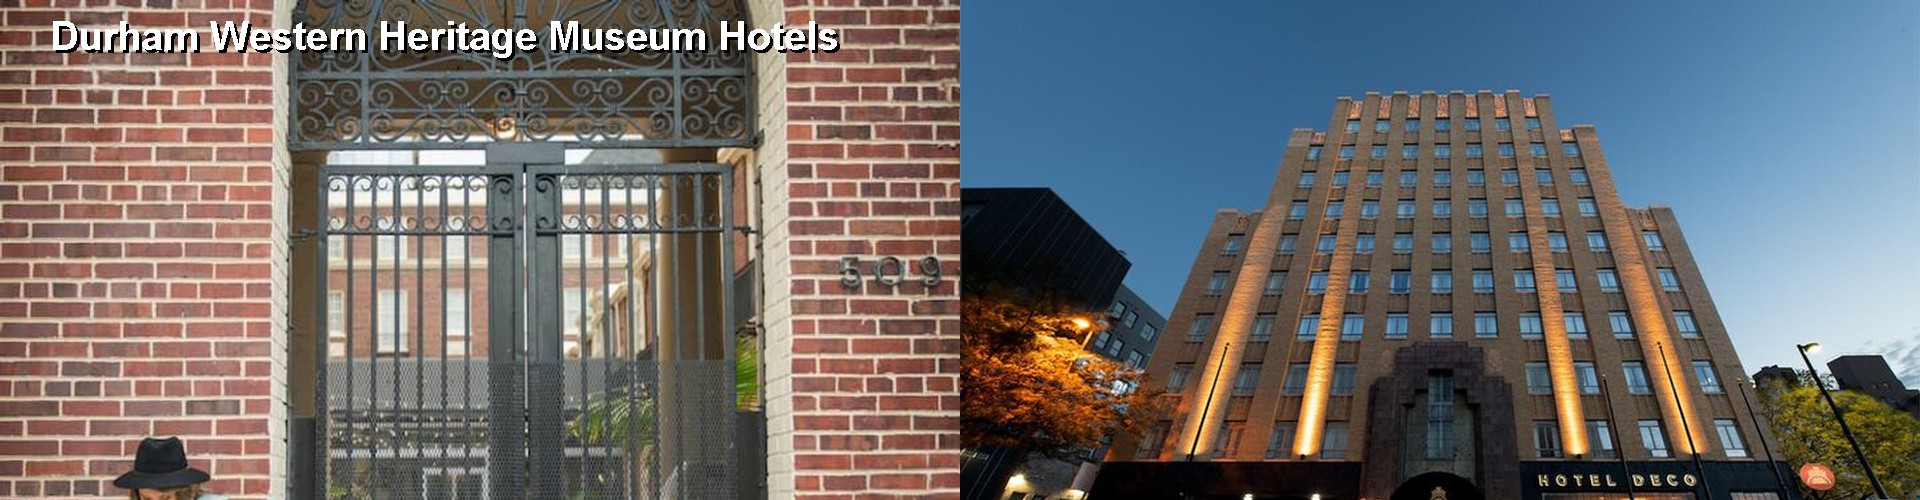 5 Best Hotels near Durham Western Heritage Museum